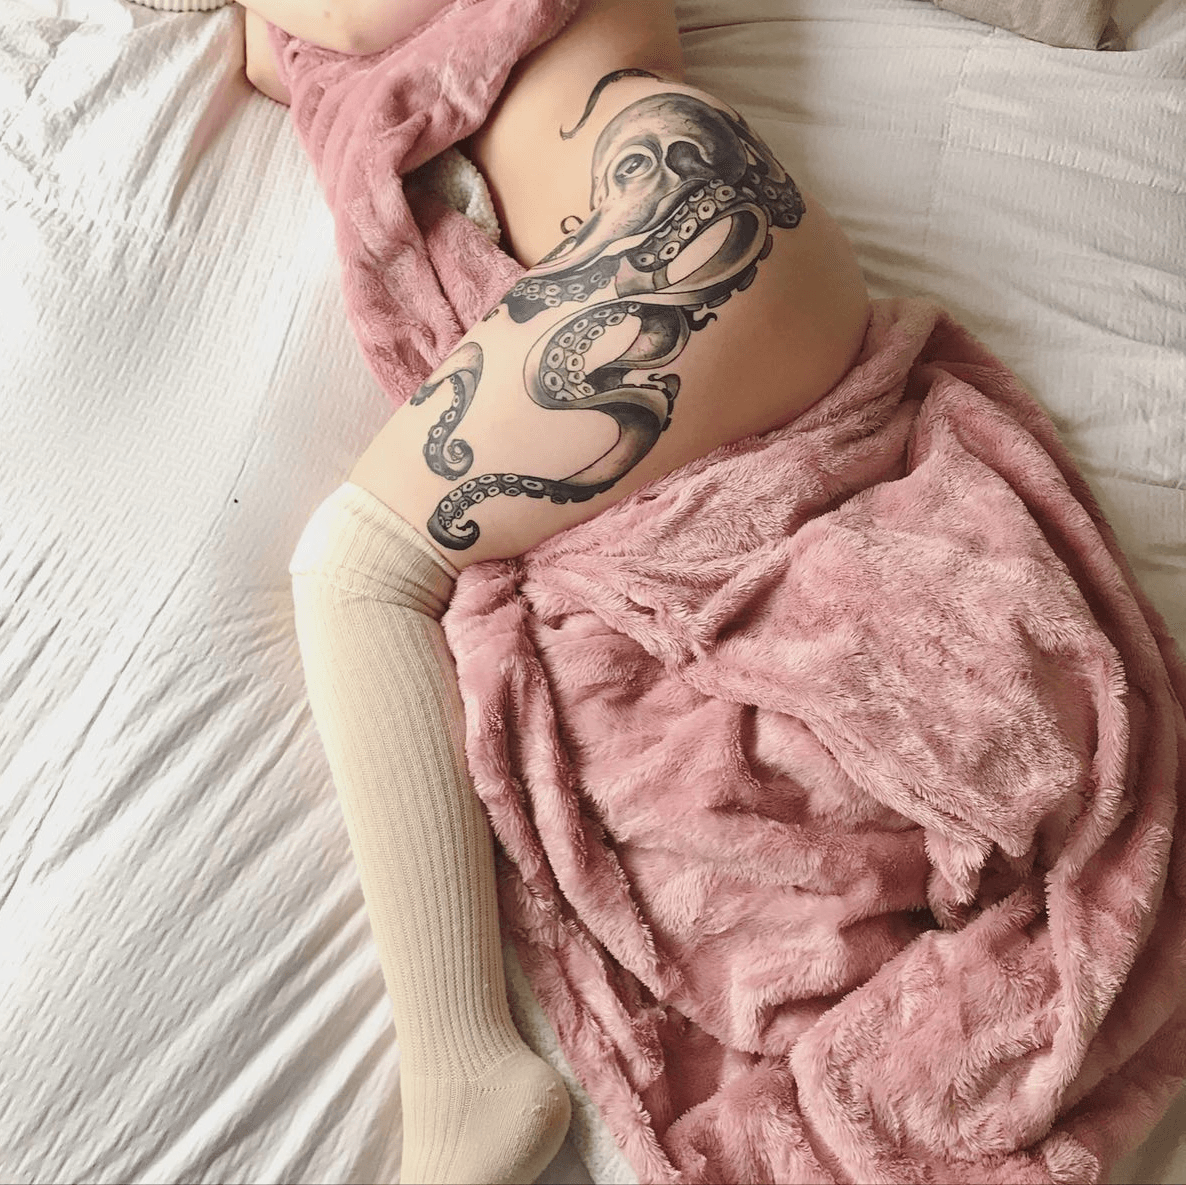 Octopus  Peonies Womens Thigh Tattoo  Best Tattoo Ideas For Men  Women